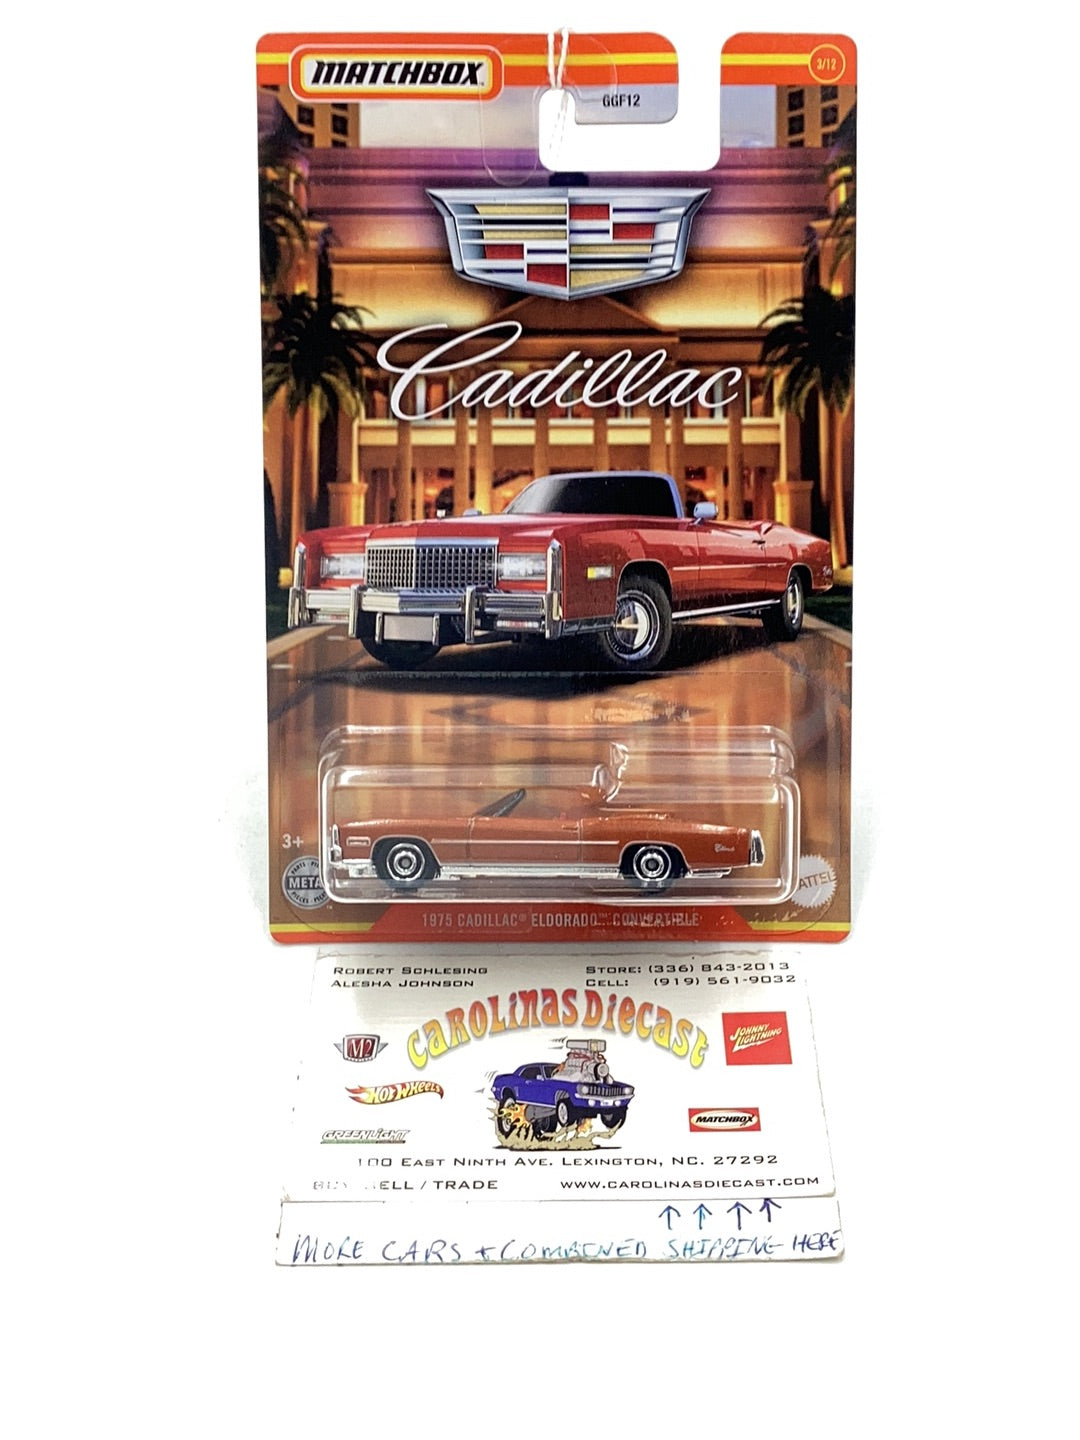 2021 Matchbox Cadillac collection 1975 Cadillac Eldorado Convertible Walmart exclusive 3/12 161P